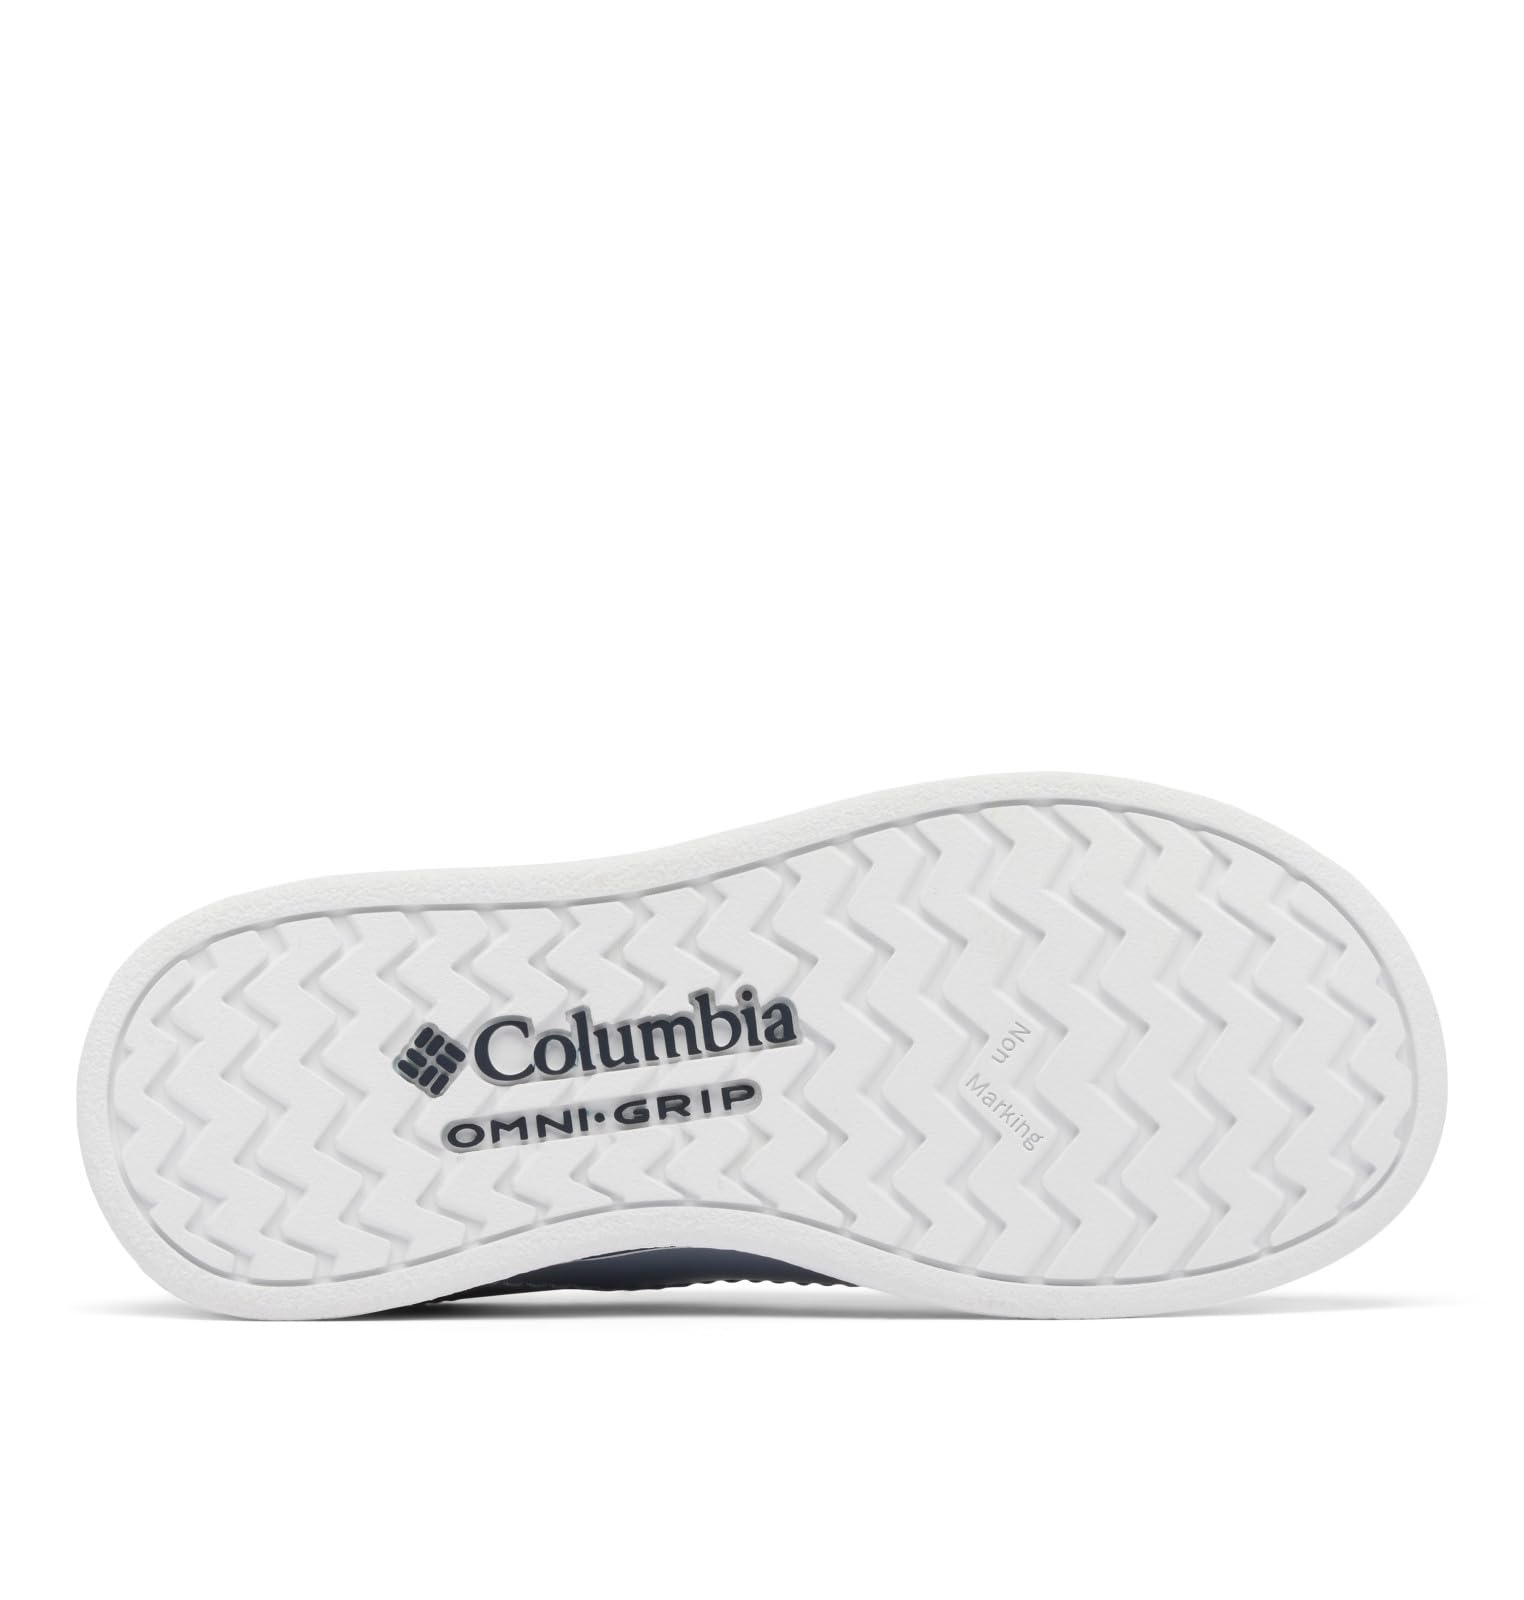 Columbia Unisex-Child Bahama PFG Boat Shoe